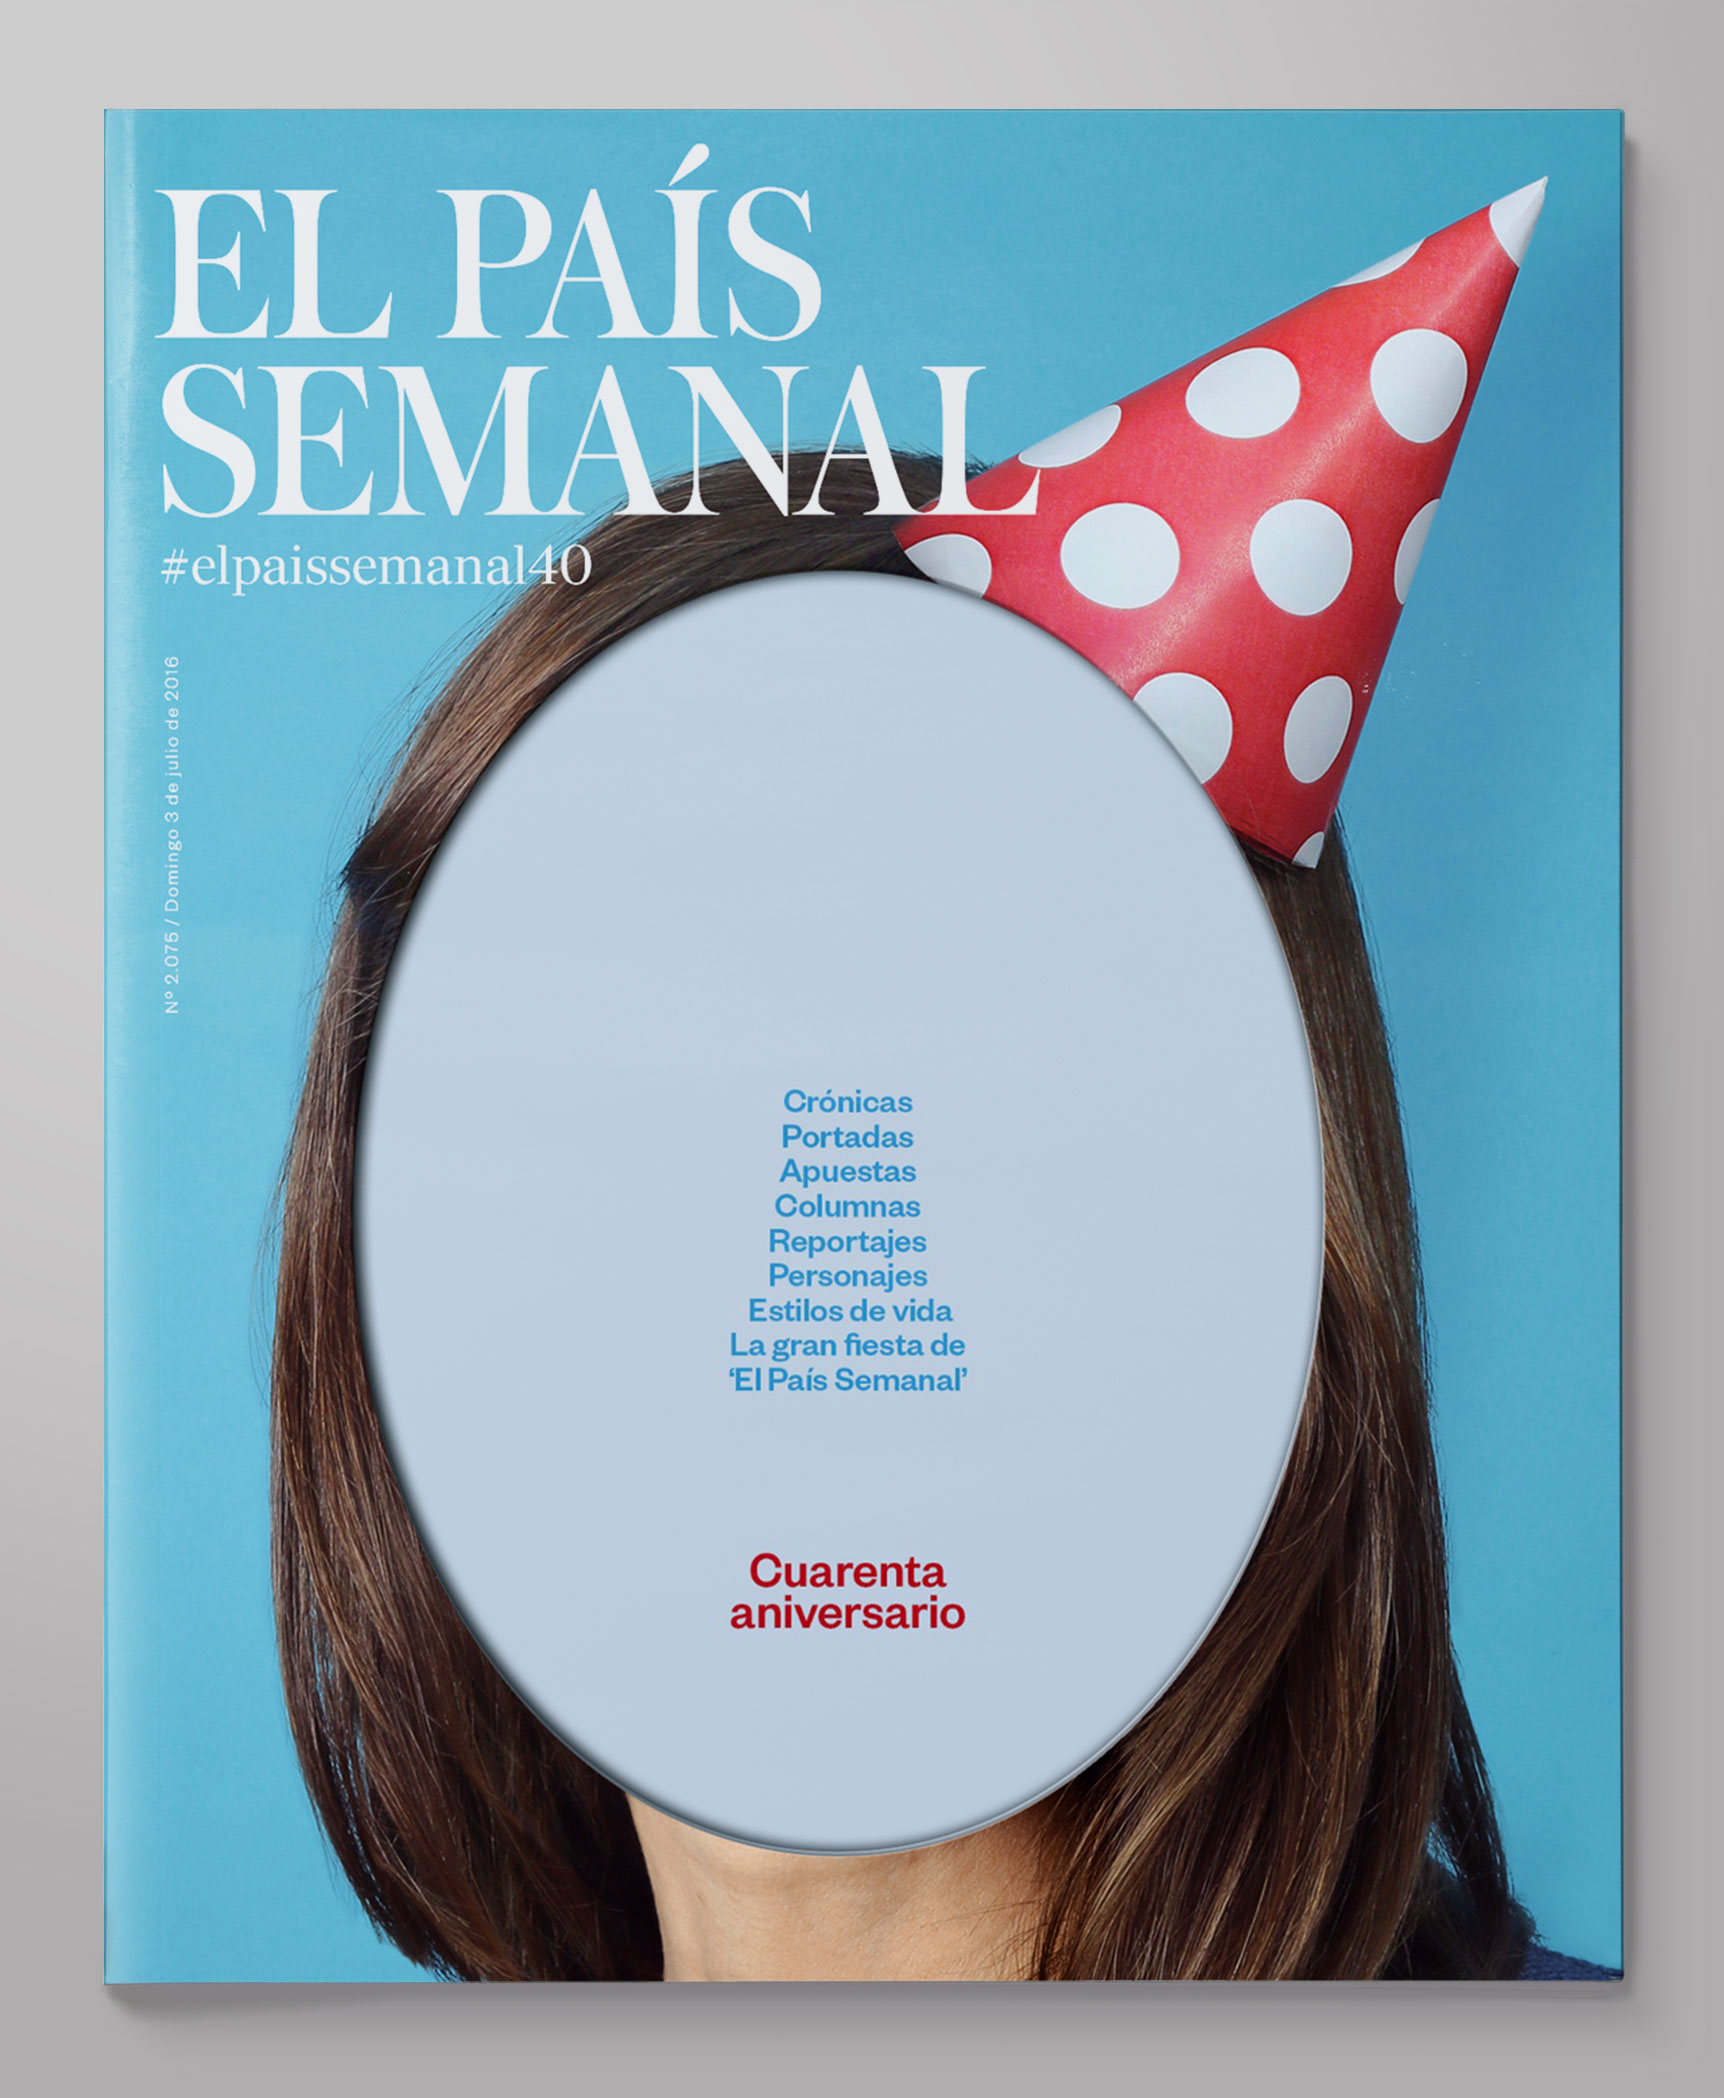 30/10/16 El País Semanal — 40 Anniversary Issue - javierjaen.com